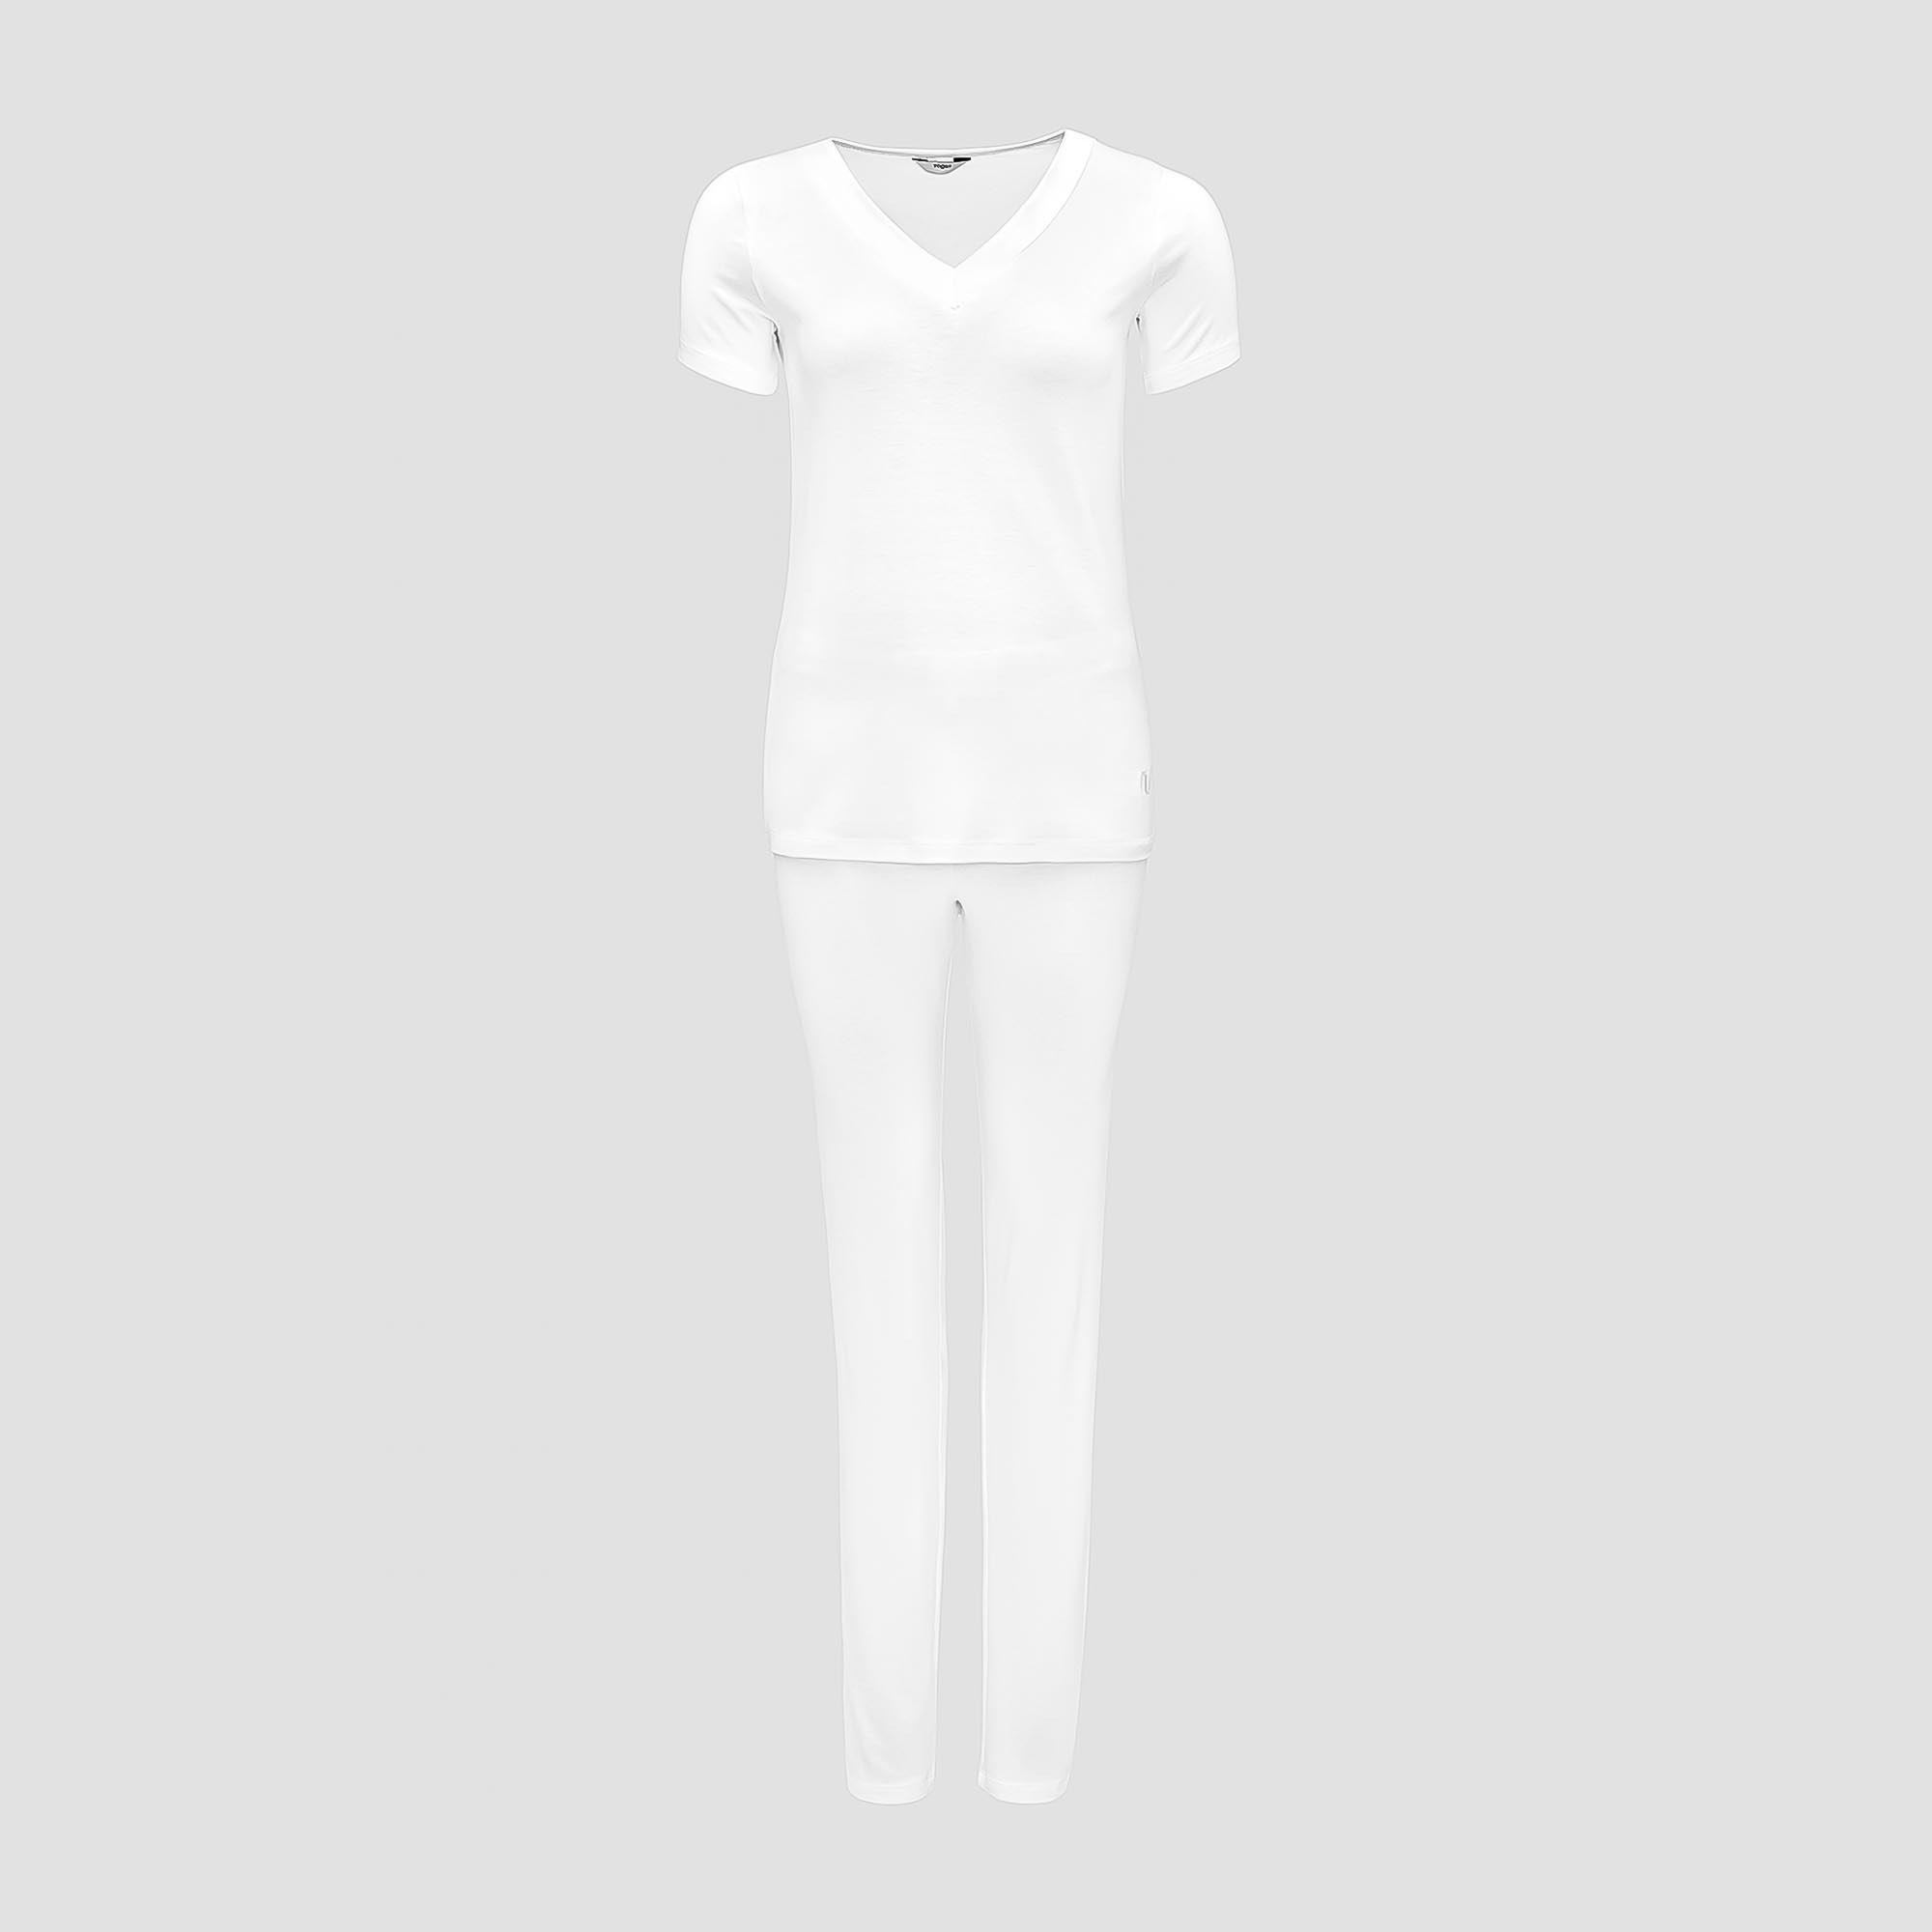 Пижама Togas Ингелла белая женская M(46) 2 предмета жен пижама с шортами инь янь белый р 50